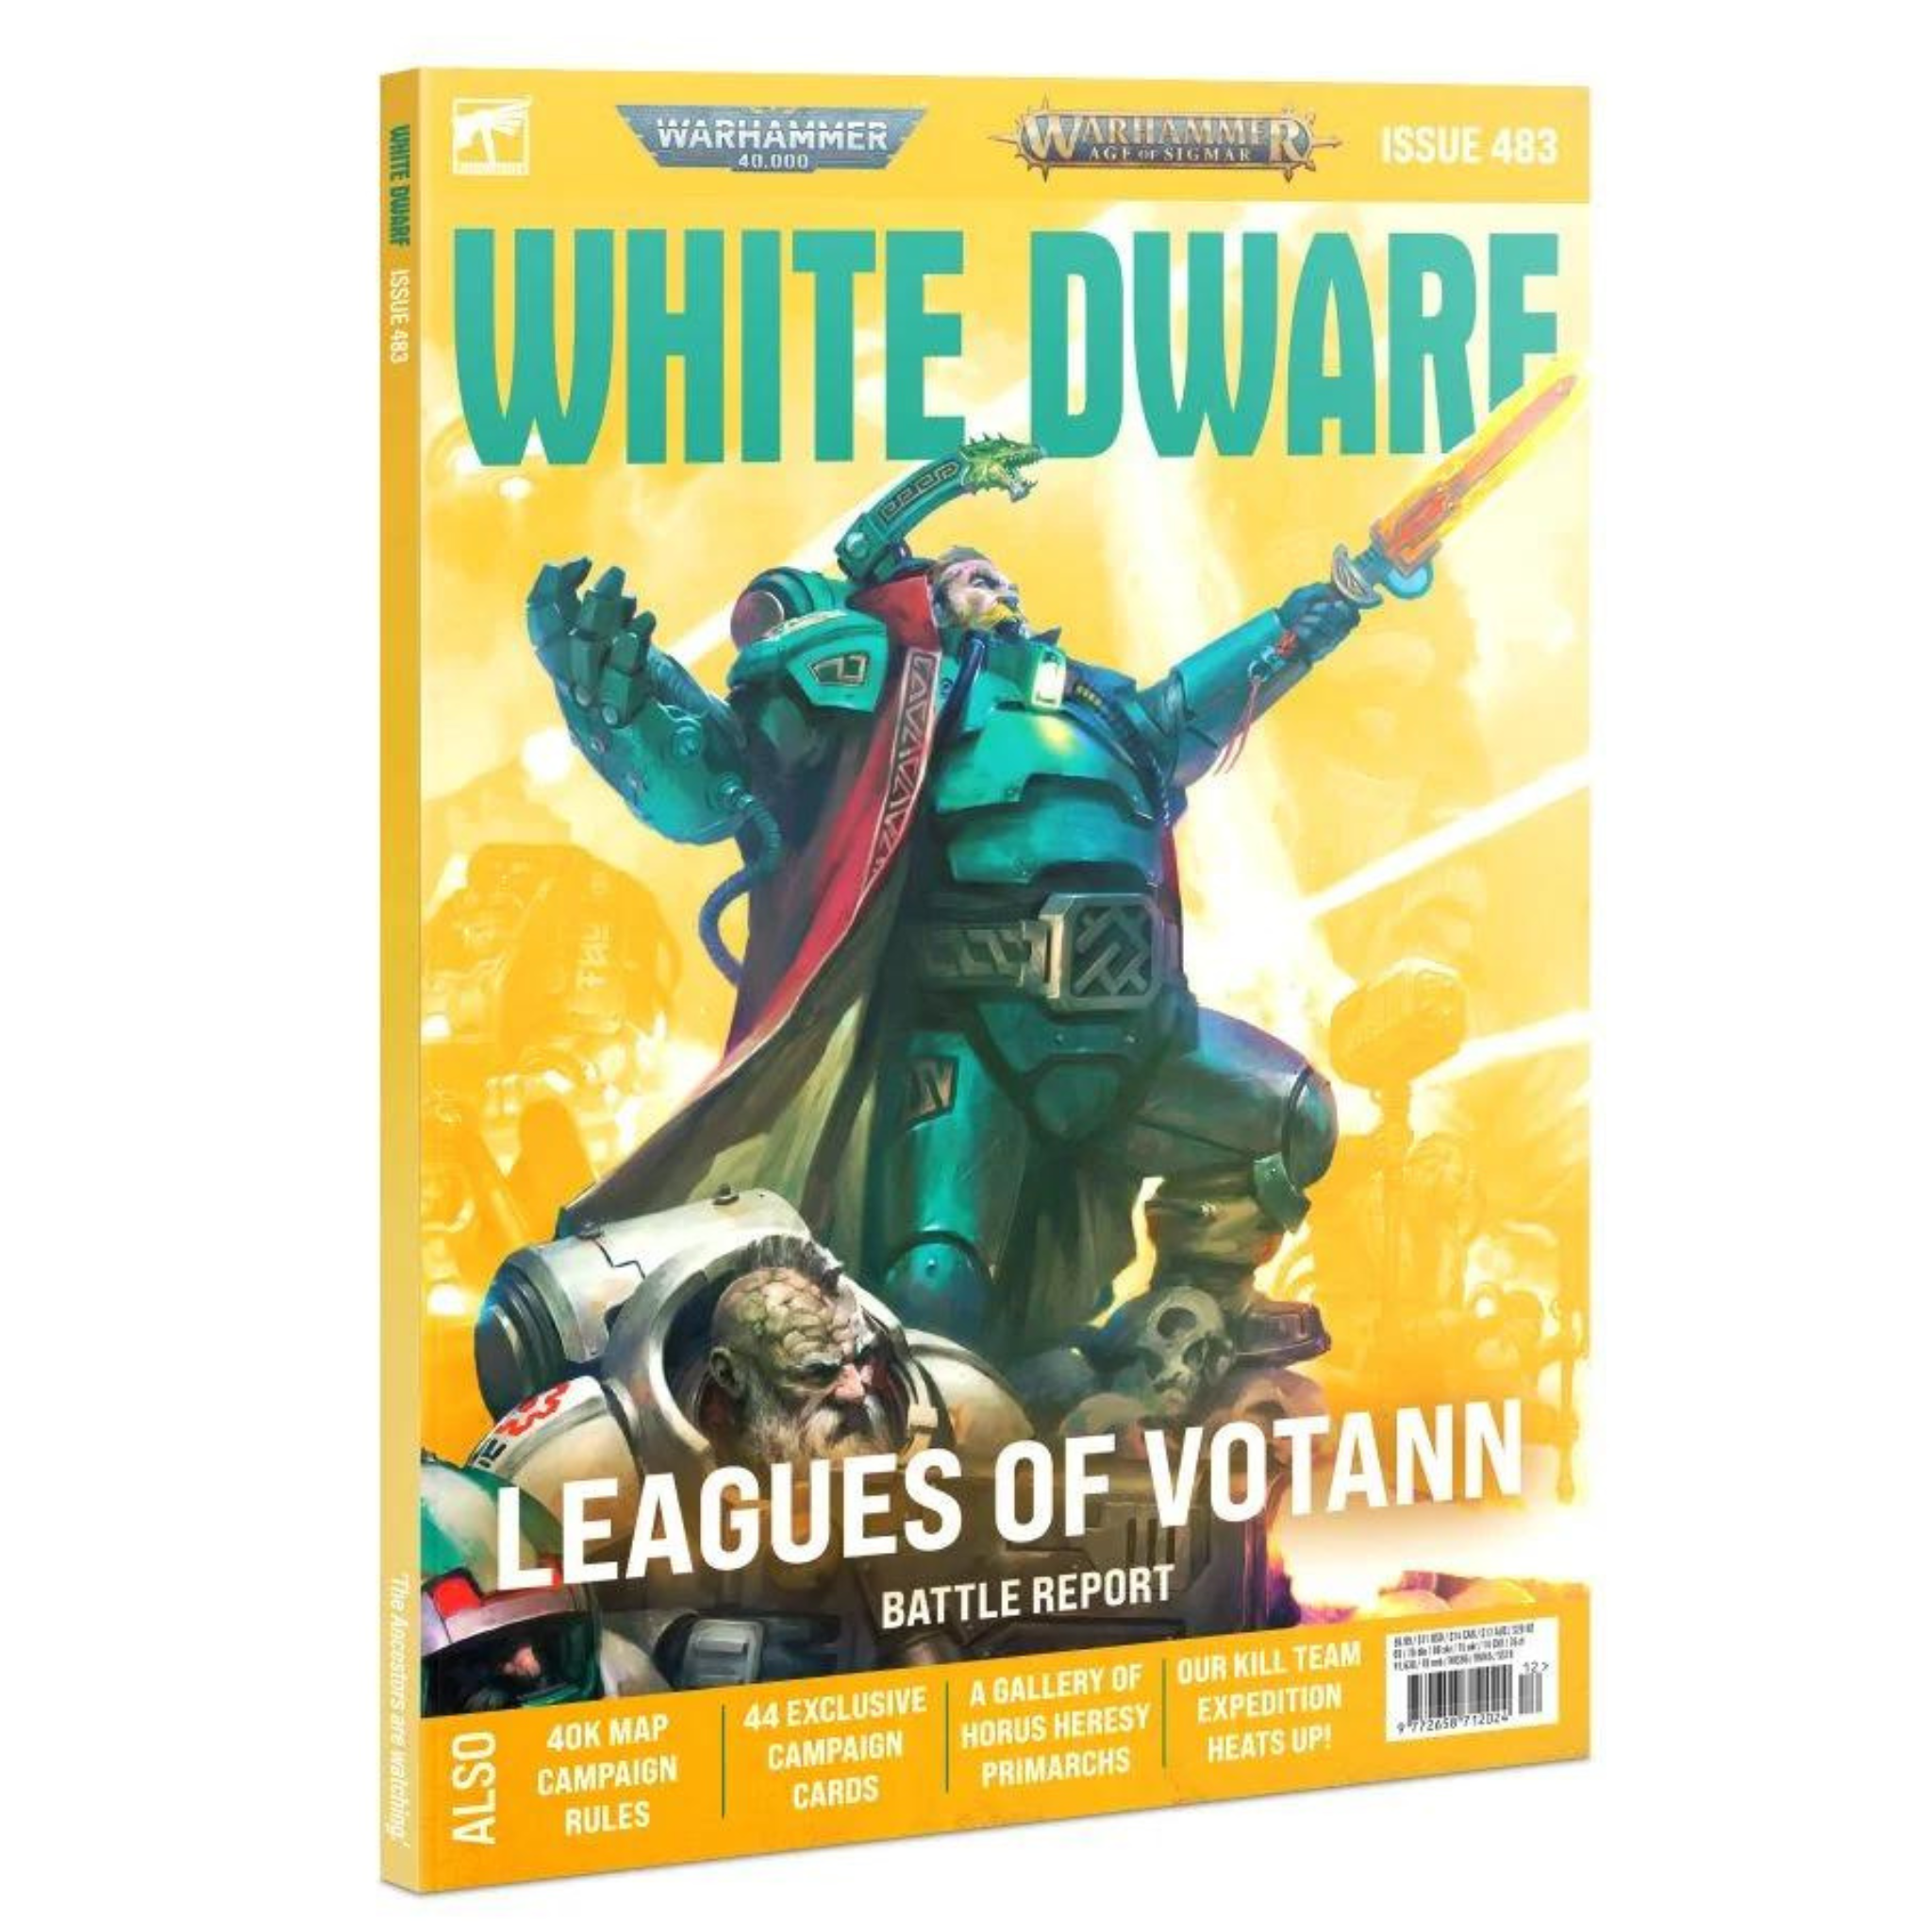 Warhammer Magazine White Dwarf Issue 483 (December 2022)